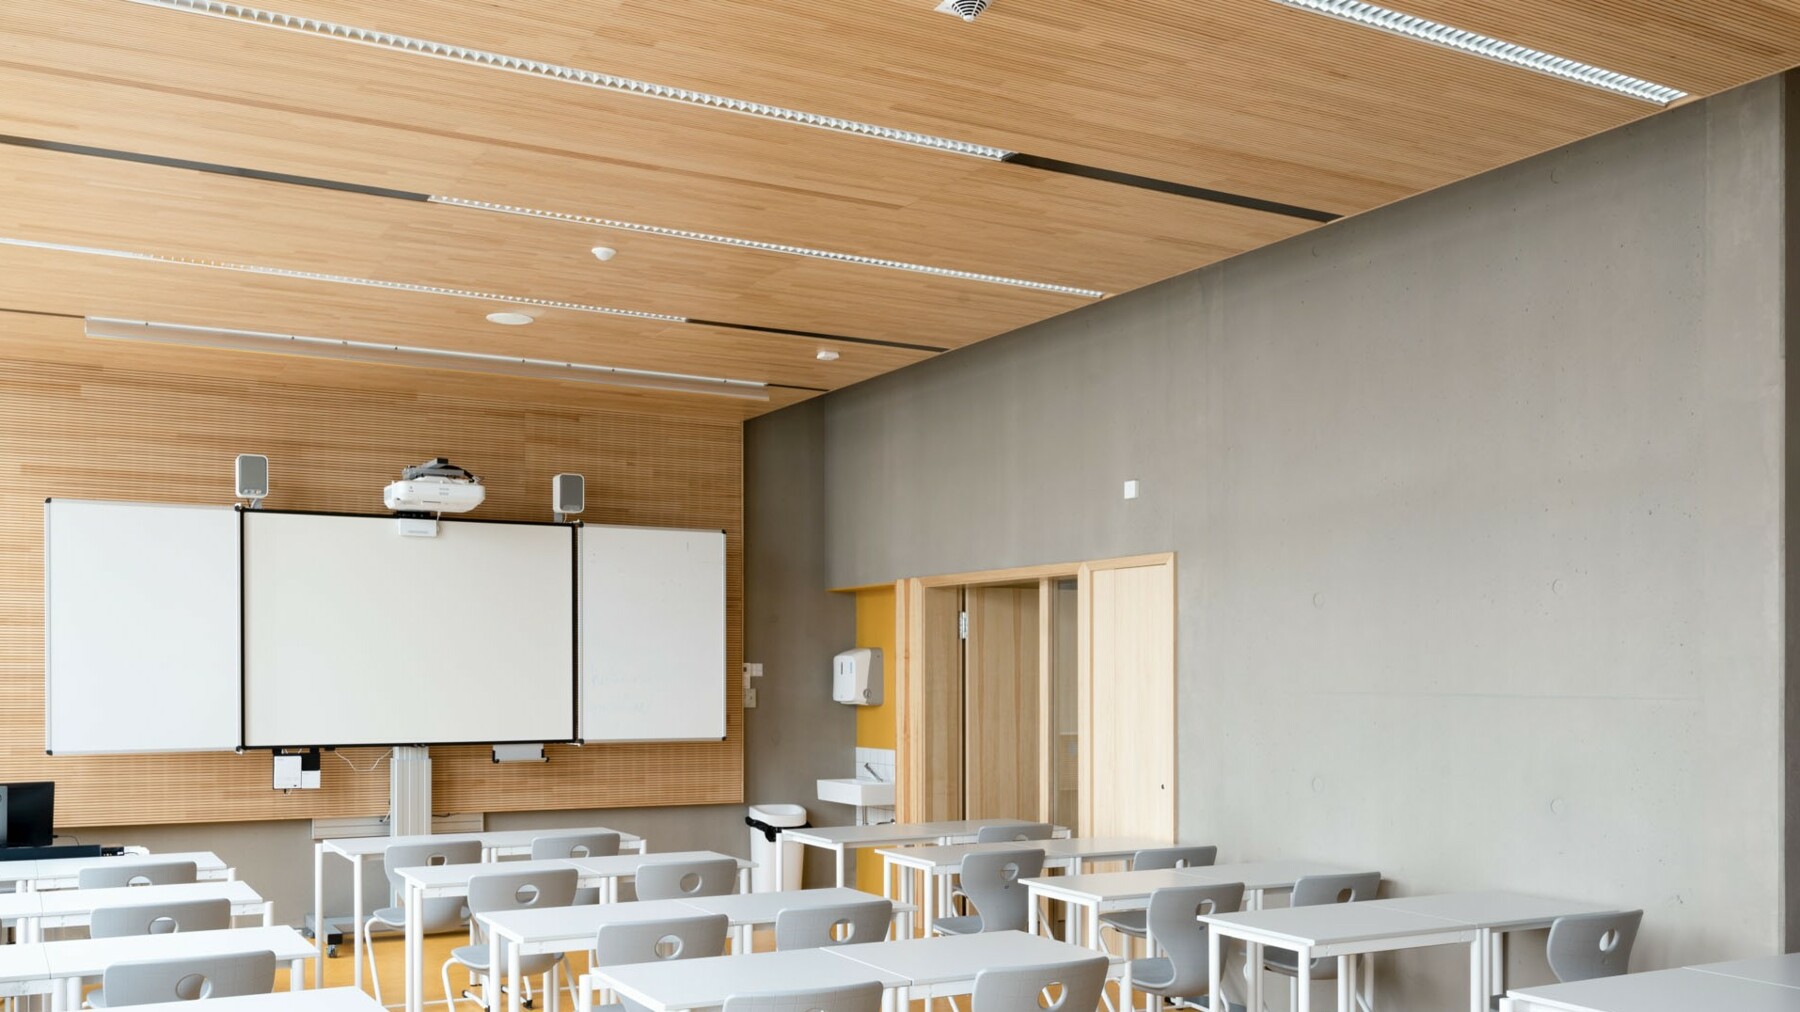 Die Deckenverkleidung aus Holz mit LIGNO® Akustik light sorgt sorgt in diesem Klassenzimmer der Schule Lycée Vauban in Luxemburg für optimale Raumakustik.